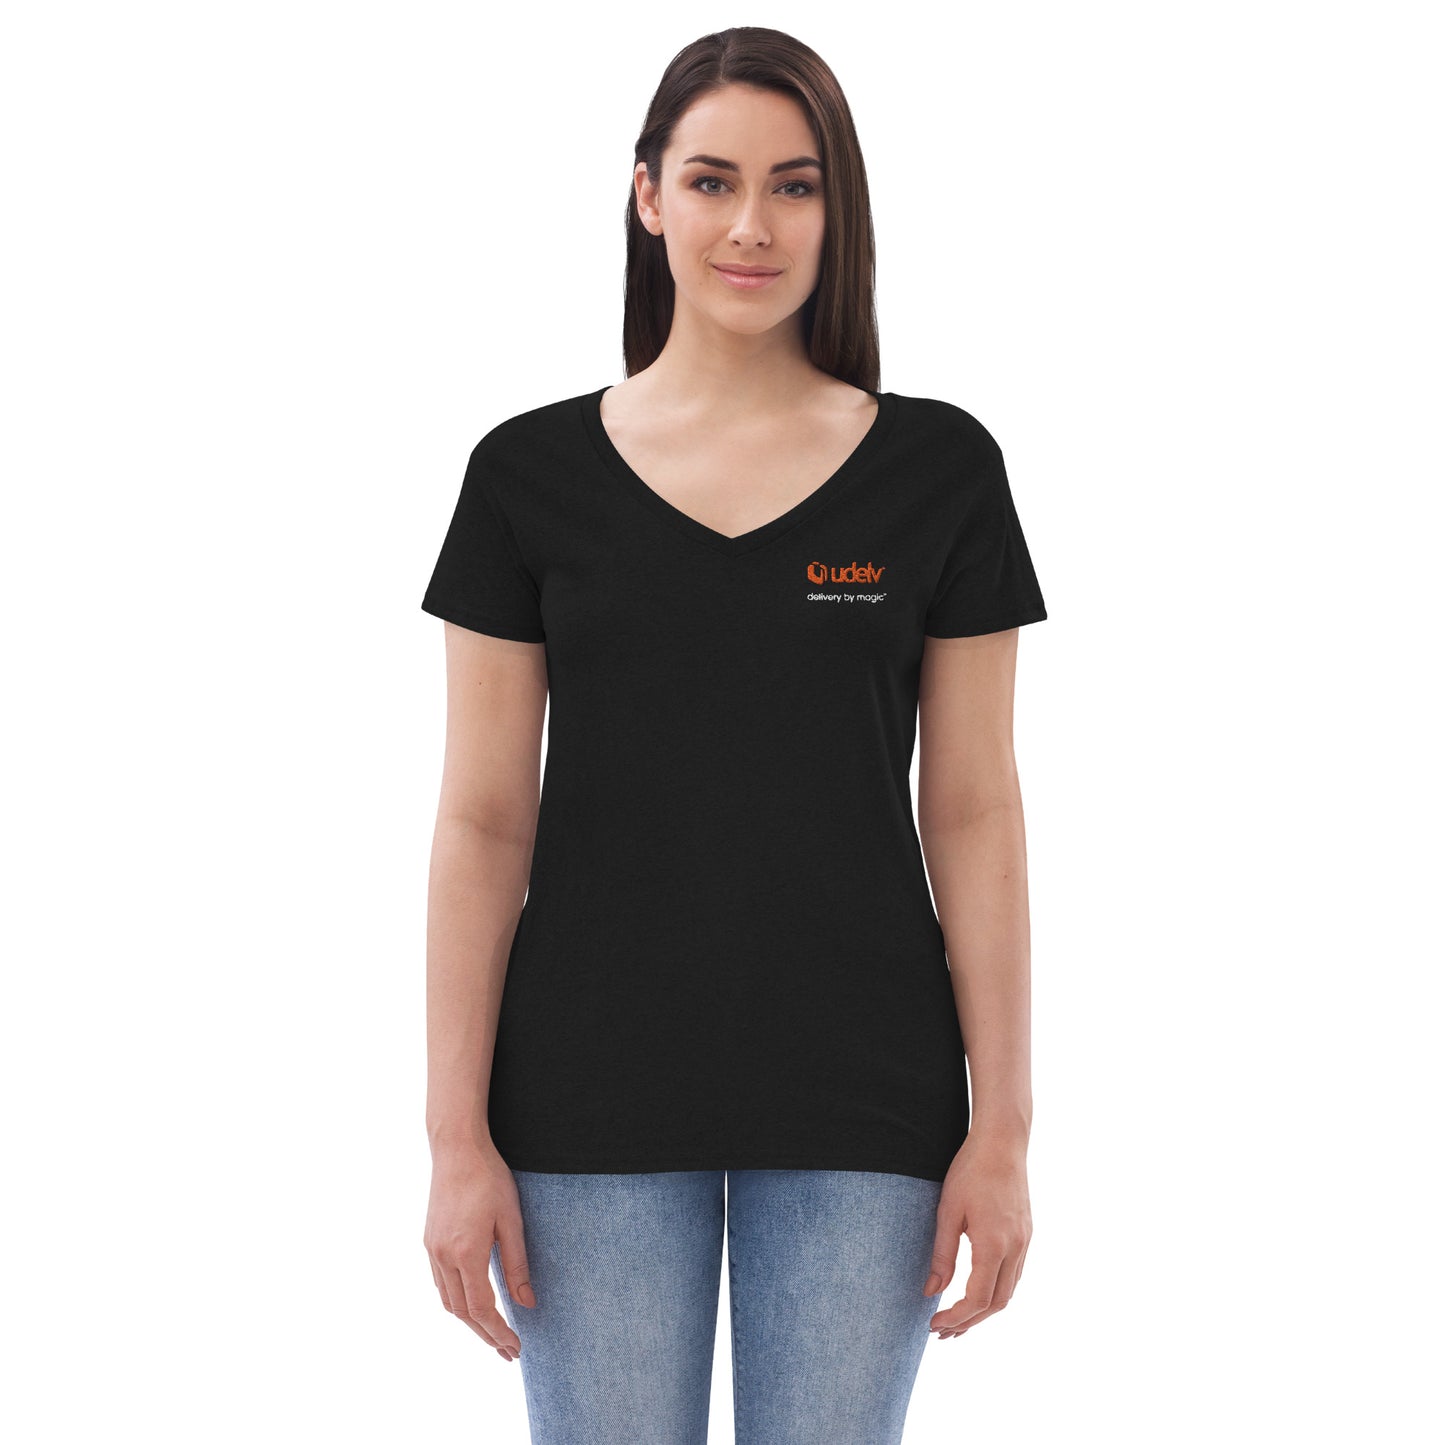 Udelv Women’s V-neck T-shirt